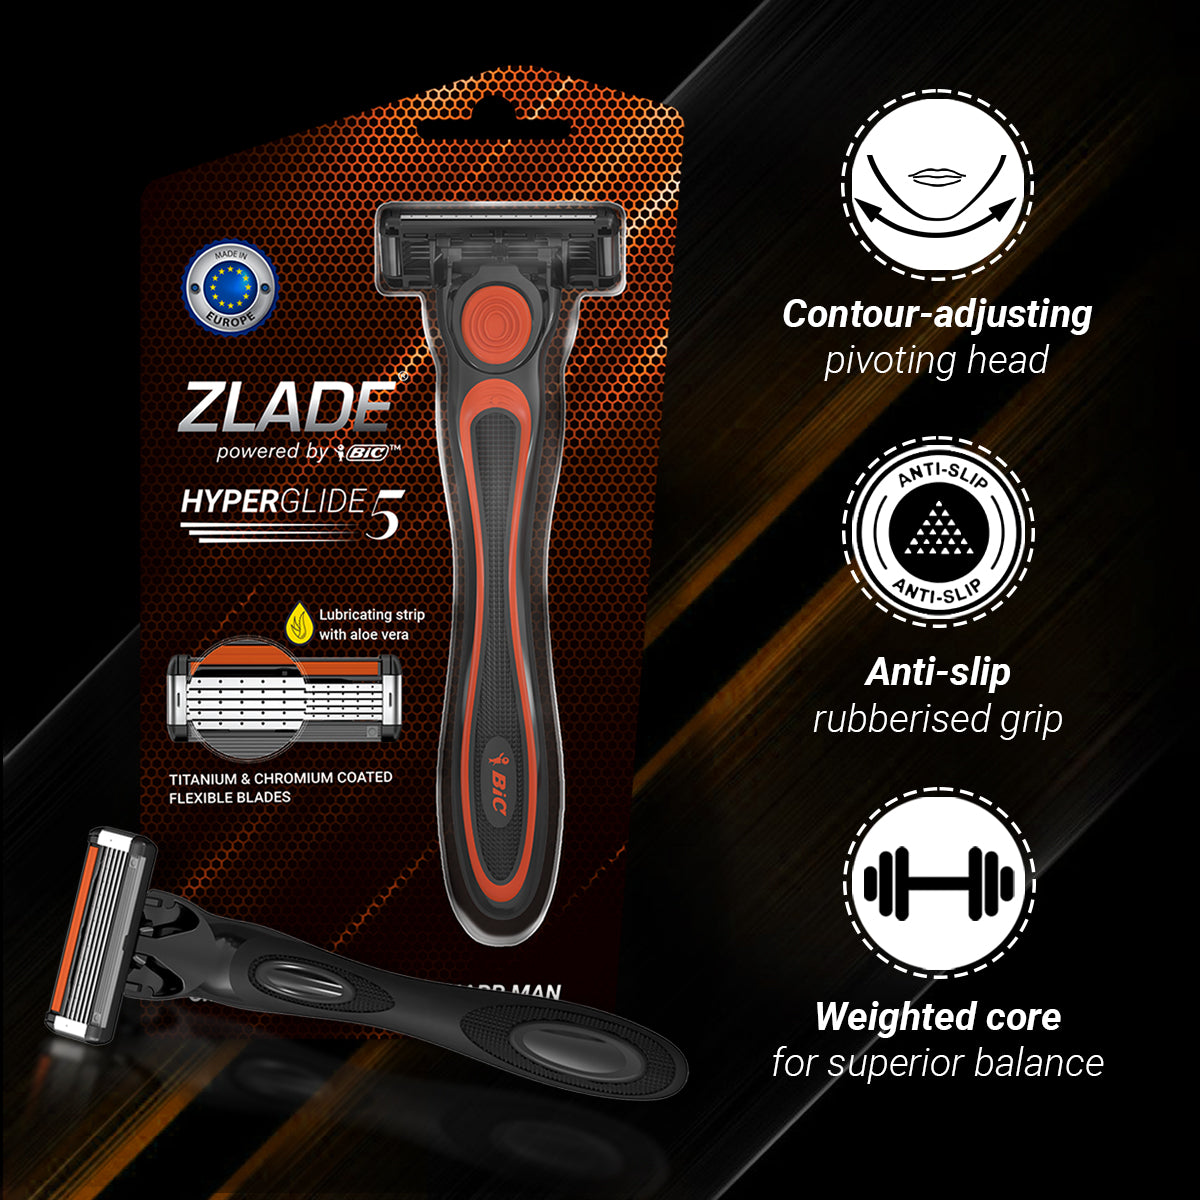 Zlade Ballistic Lite Trimmer & Zlade HyperGlide5 Shaving Razor